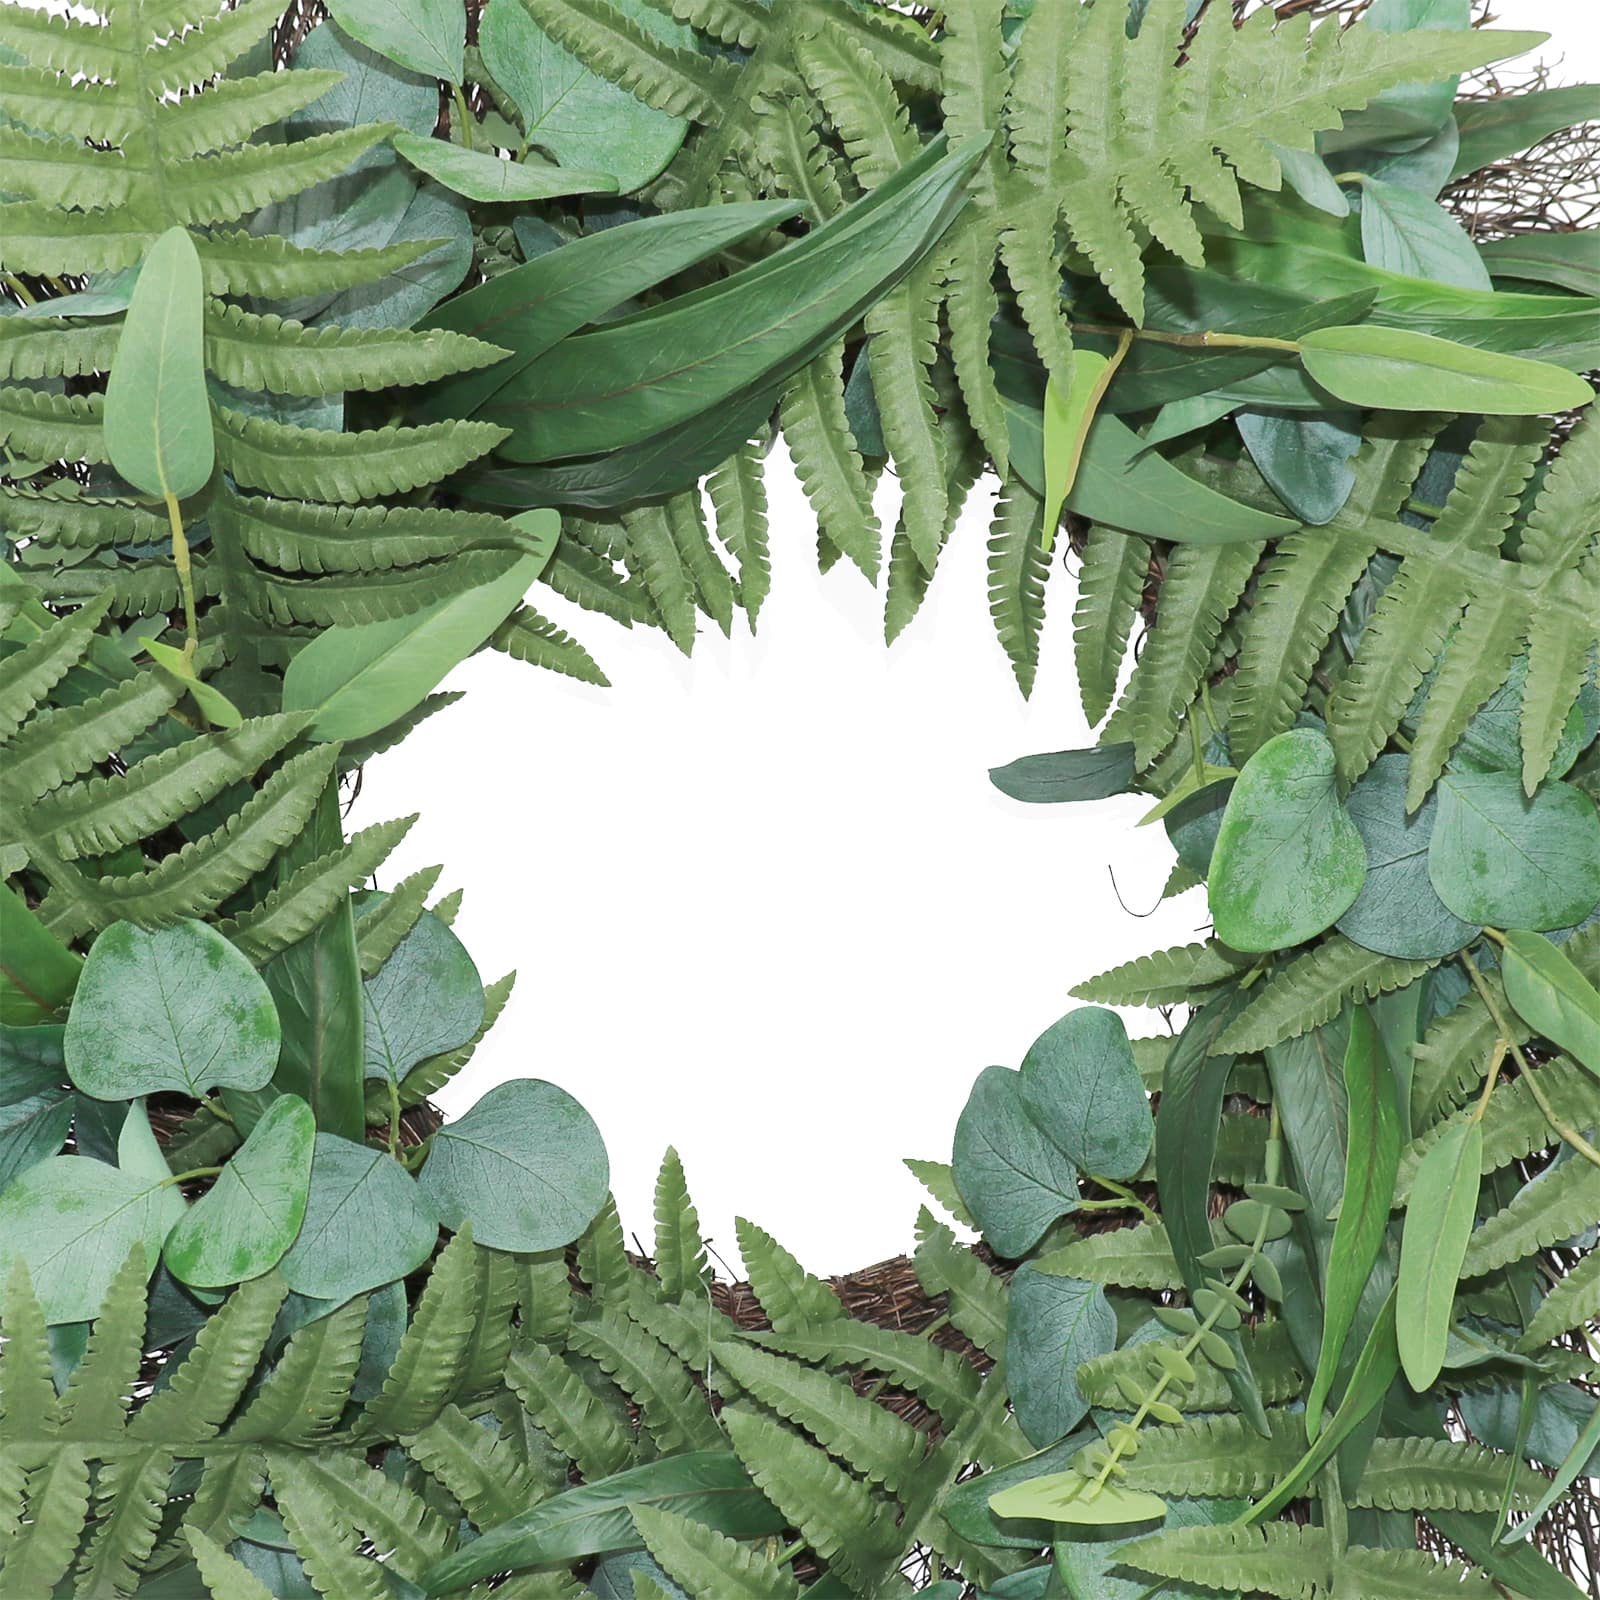 24&#x22; Eucalyptus &#x26; Fern Wreath by Ashland&#xAE;